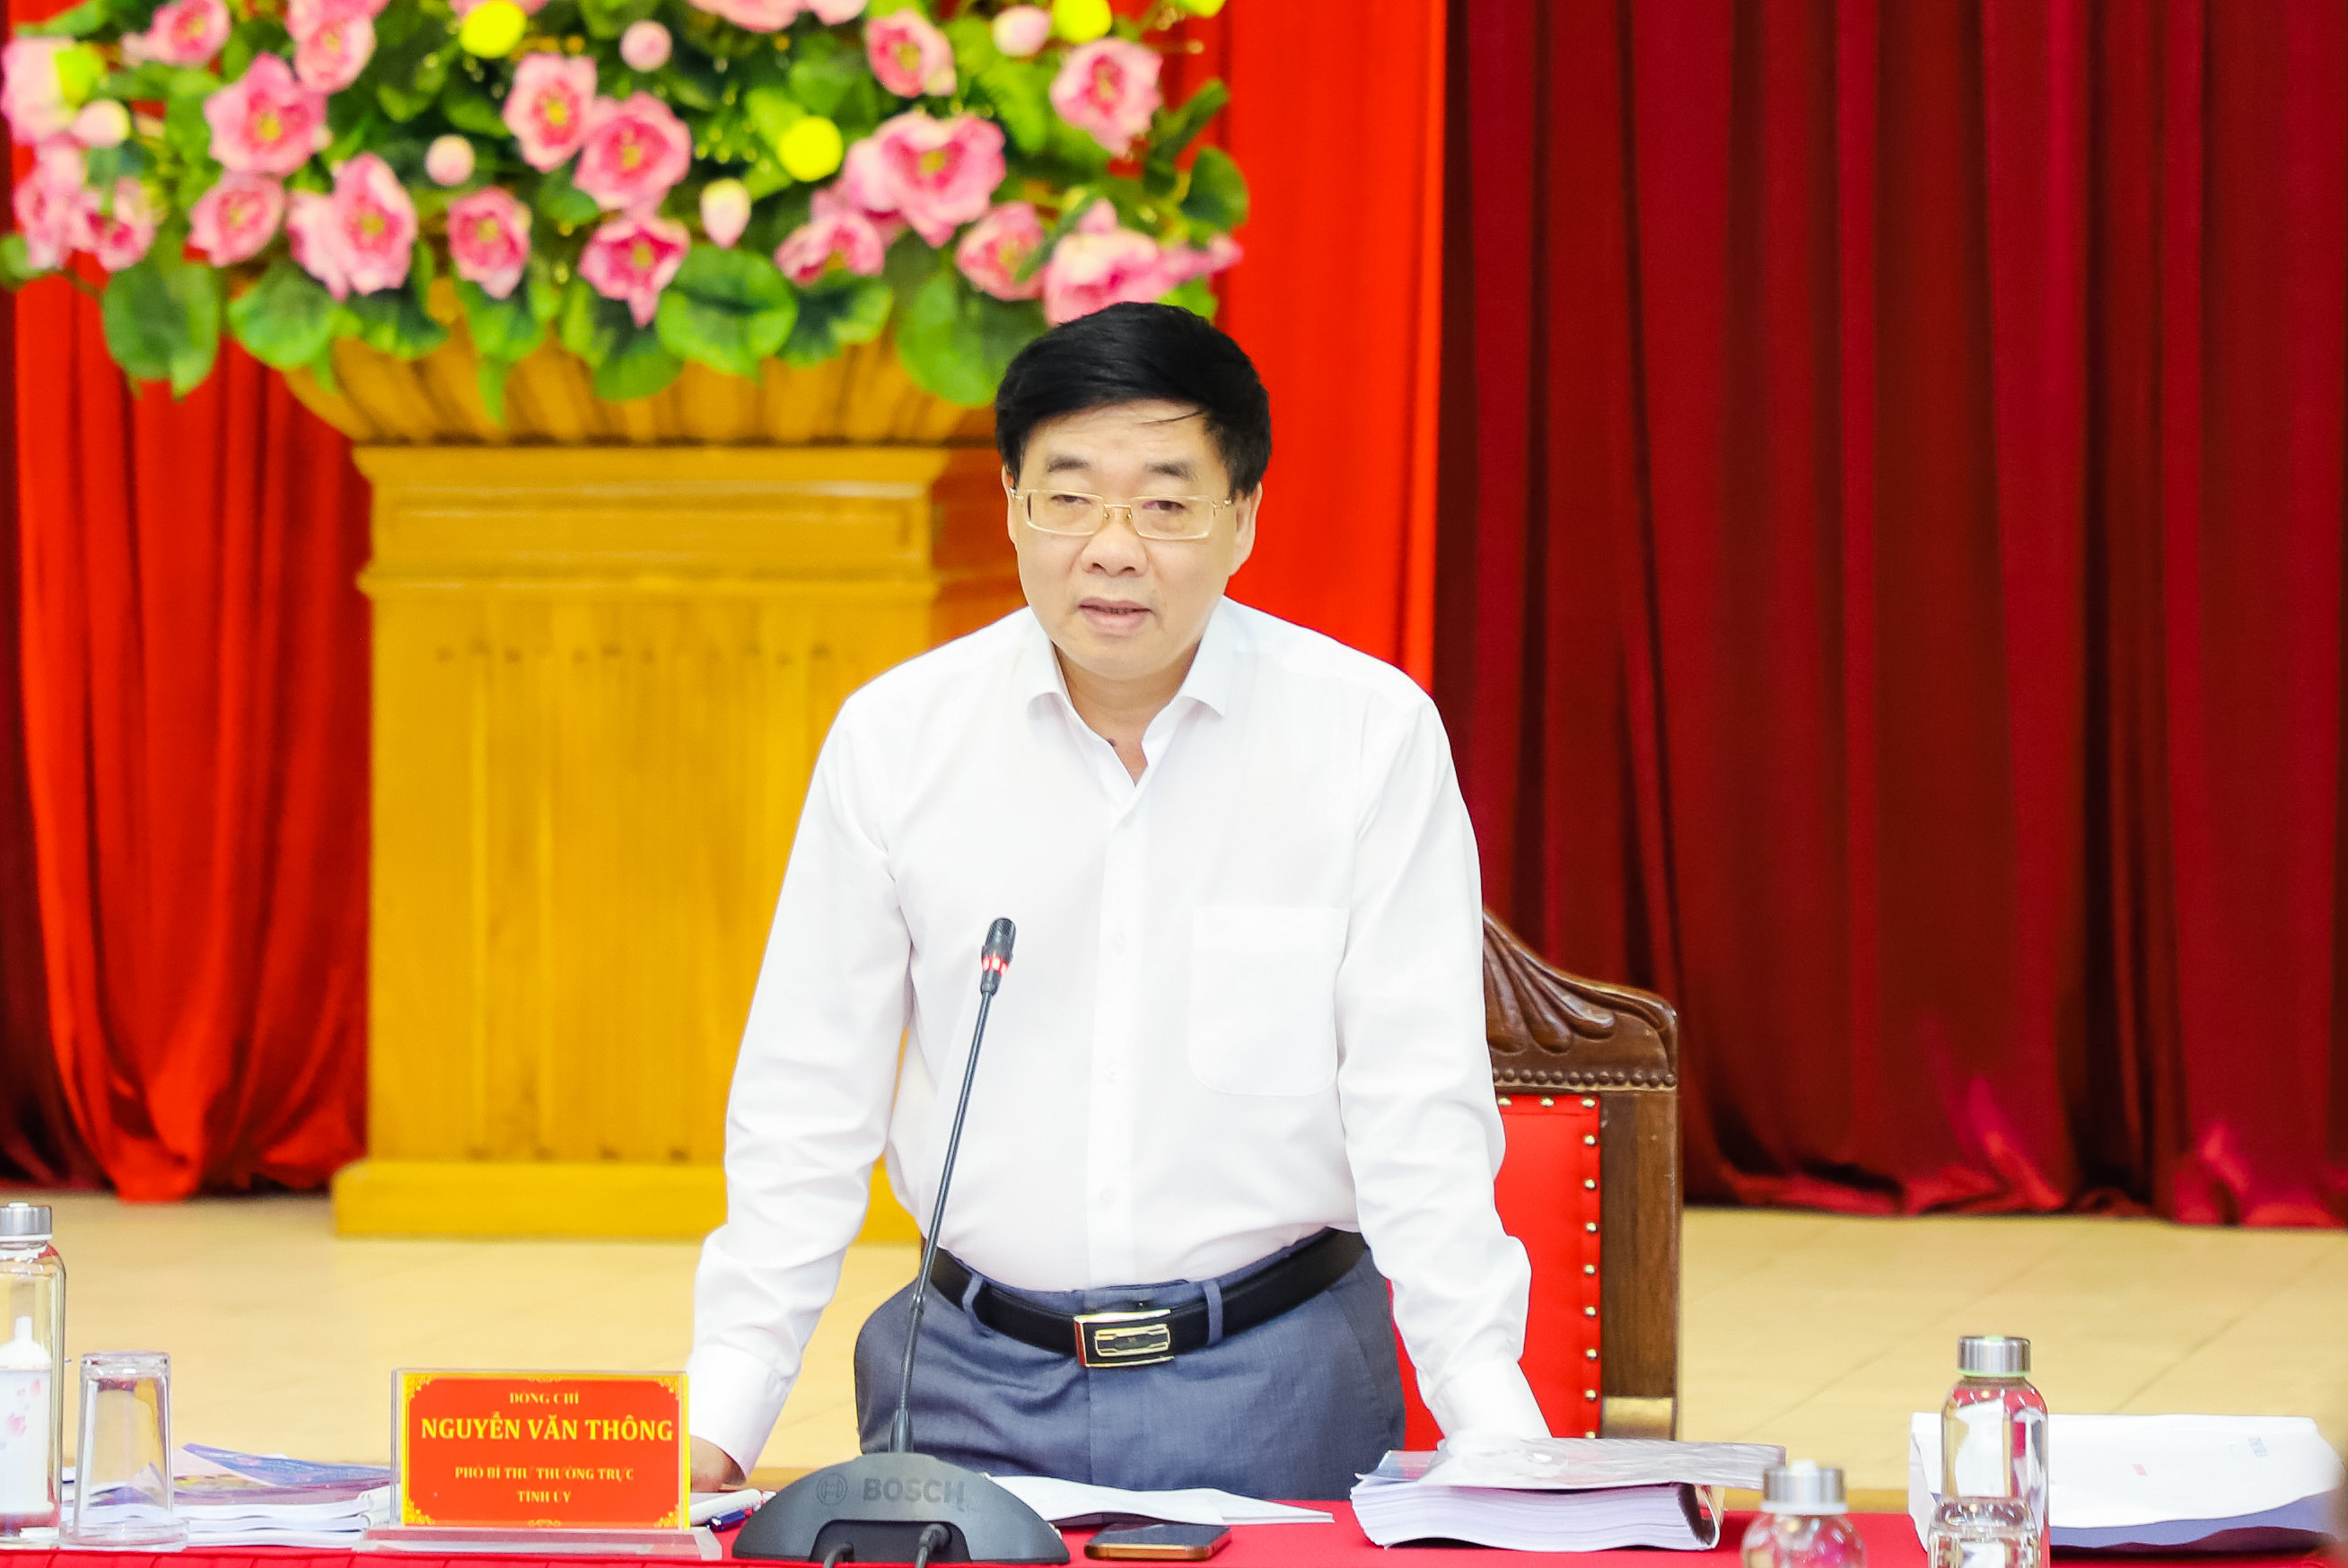 Đồng chí Nguyễn Văn Thông - Phó Bí thư Thường trực Tỉnh ủy kết luận cuộc làm việc. Ảnh: Phạm Bằng